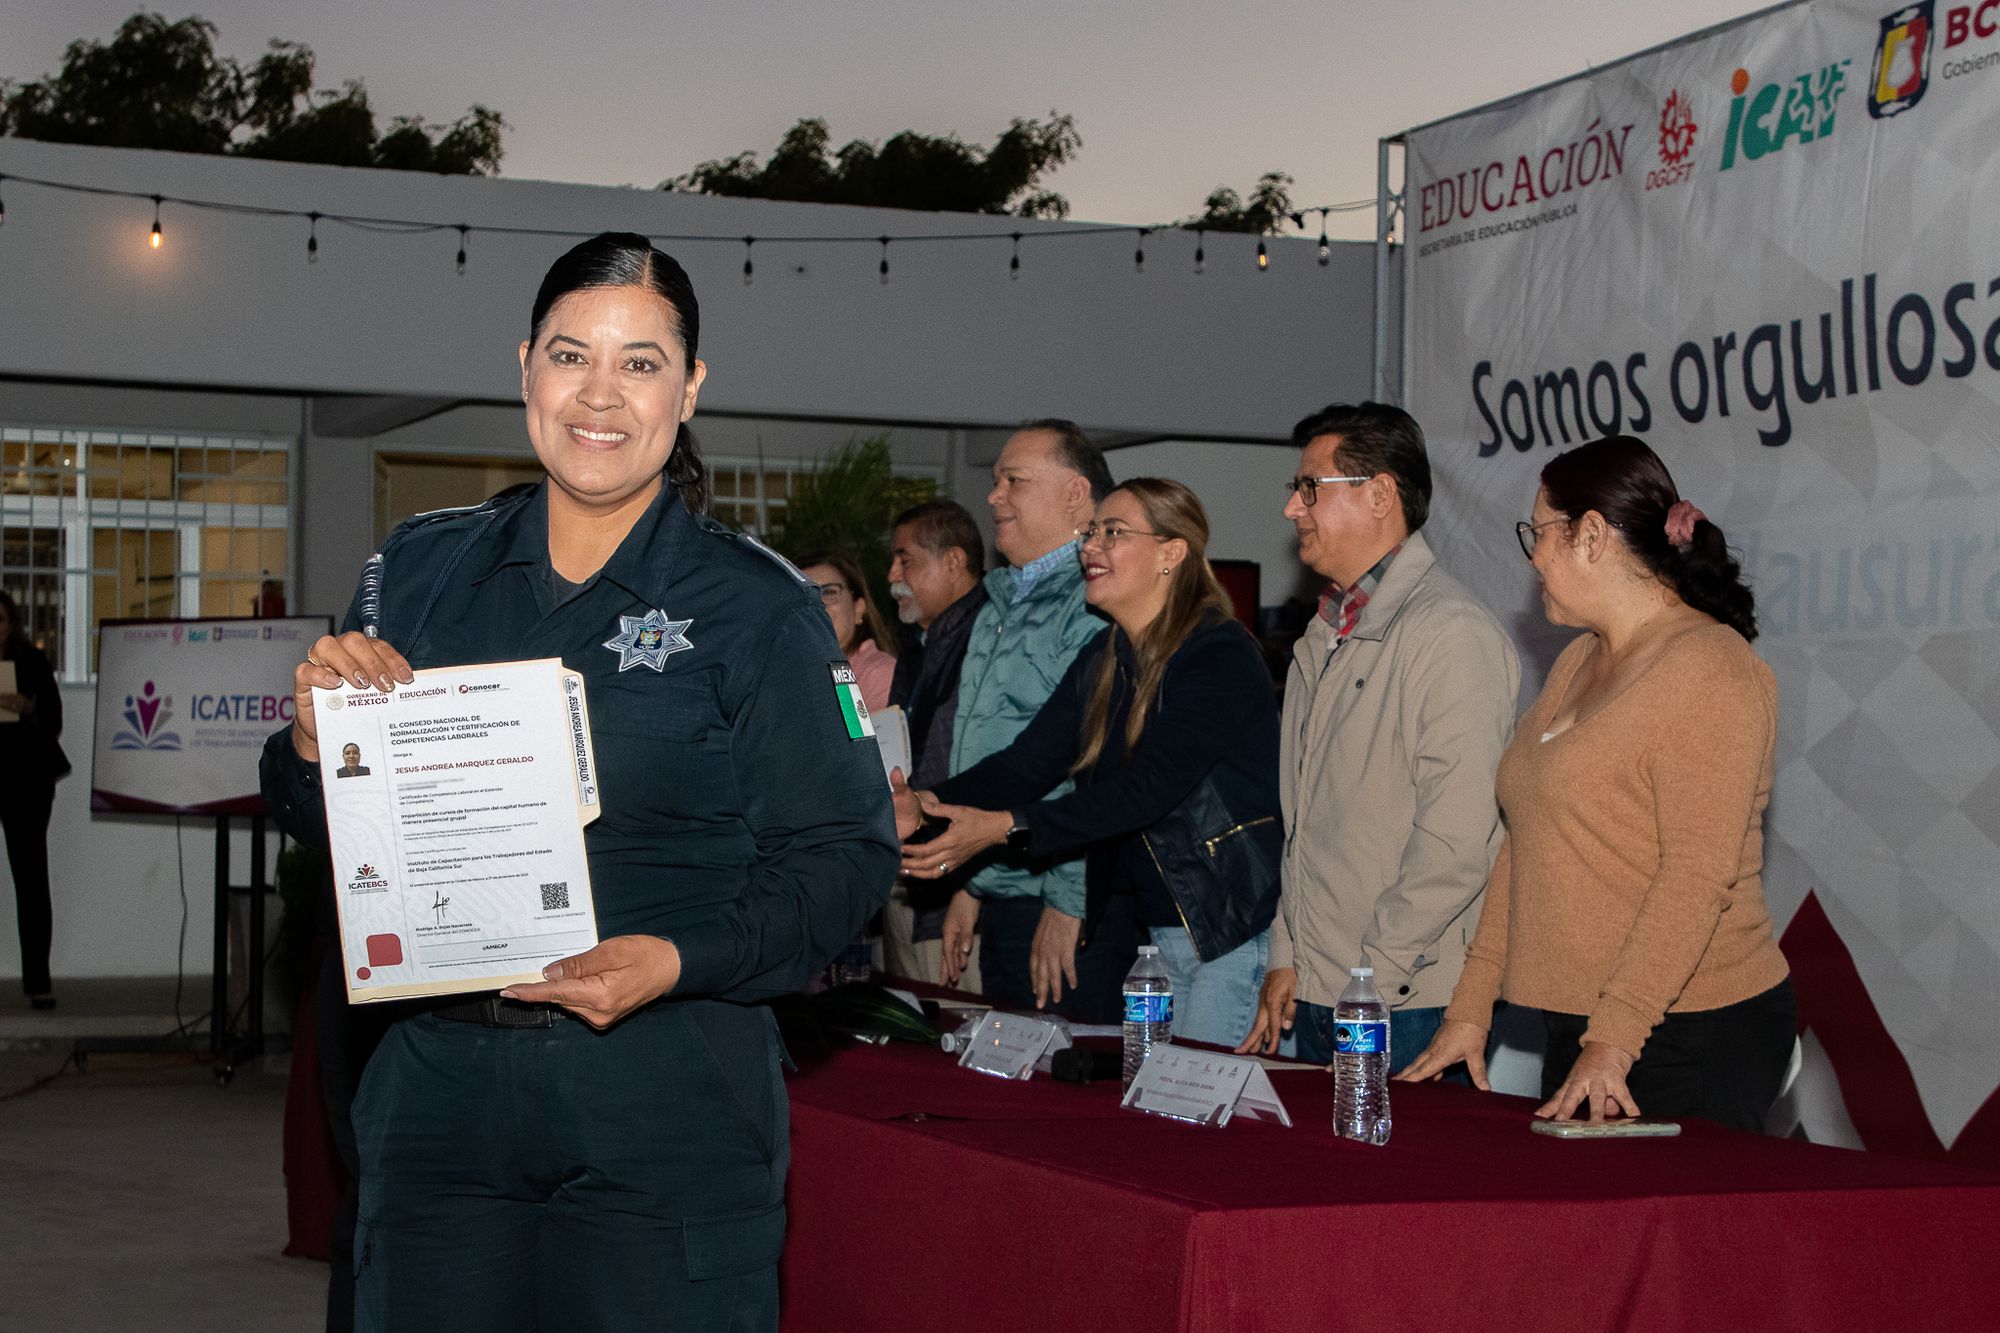 Recibe una elemento de la Policía Municipal de La Paz certificación 
en Competencia Laboral e Impartición de Cursos